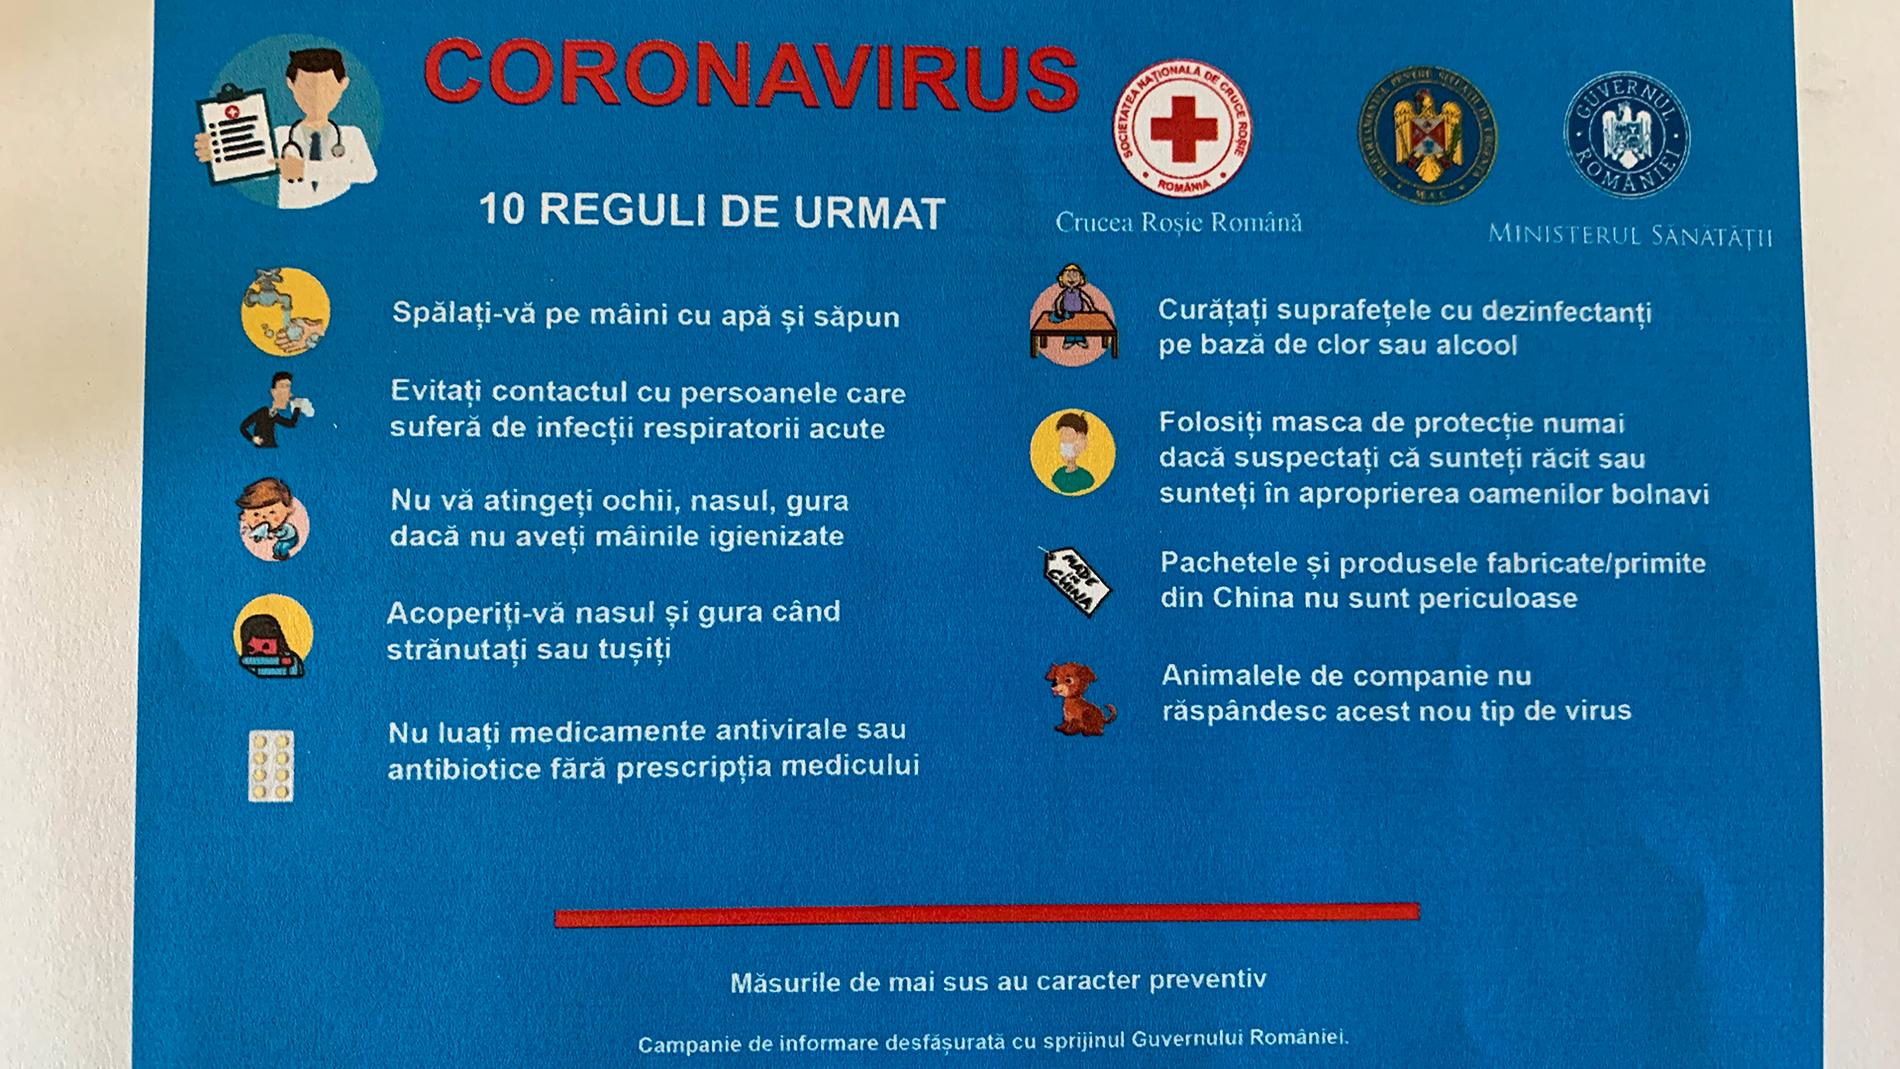 Det flygblad som rumänska ambassaden har tagit fram för att informera om coronaviruset.